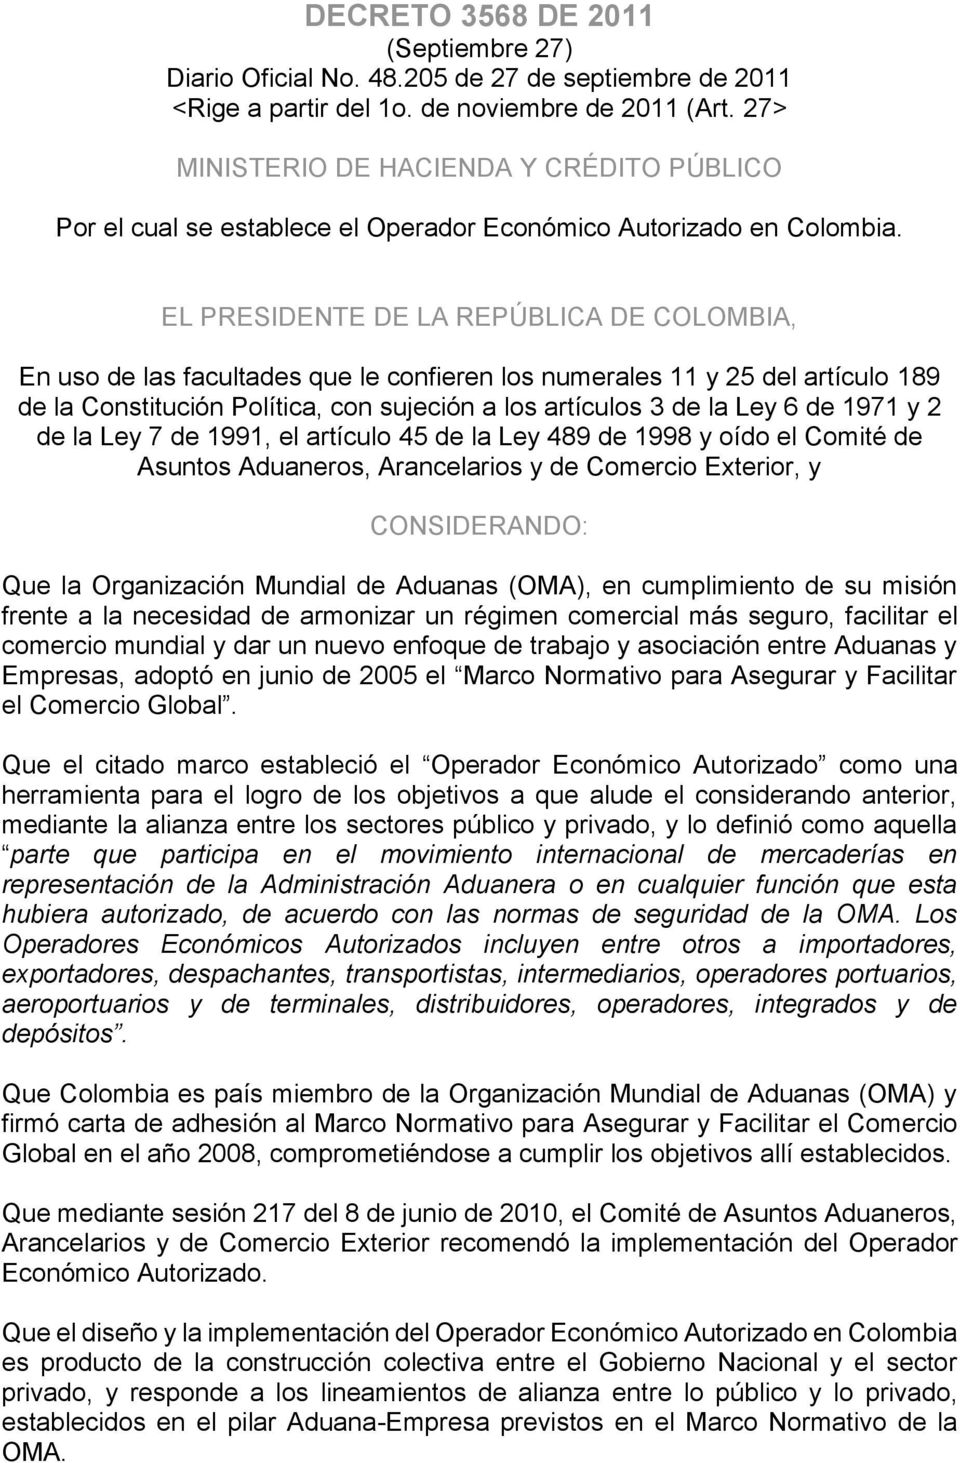 EL PRESIDENTE DE LA REPÚBLICA DE COLOMBIA, En uso de las facultades que le confieren los numerales 11 y 25 del artículo 189 de la Constitución Política, con sujeción a los artículos 3 de la Ley 6 de